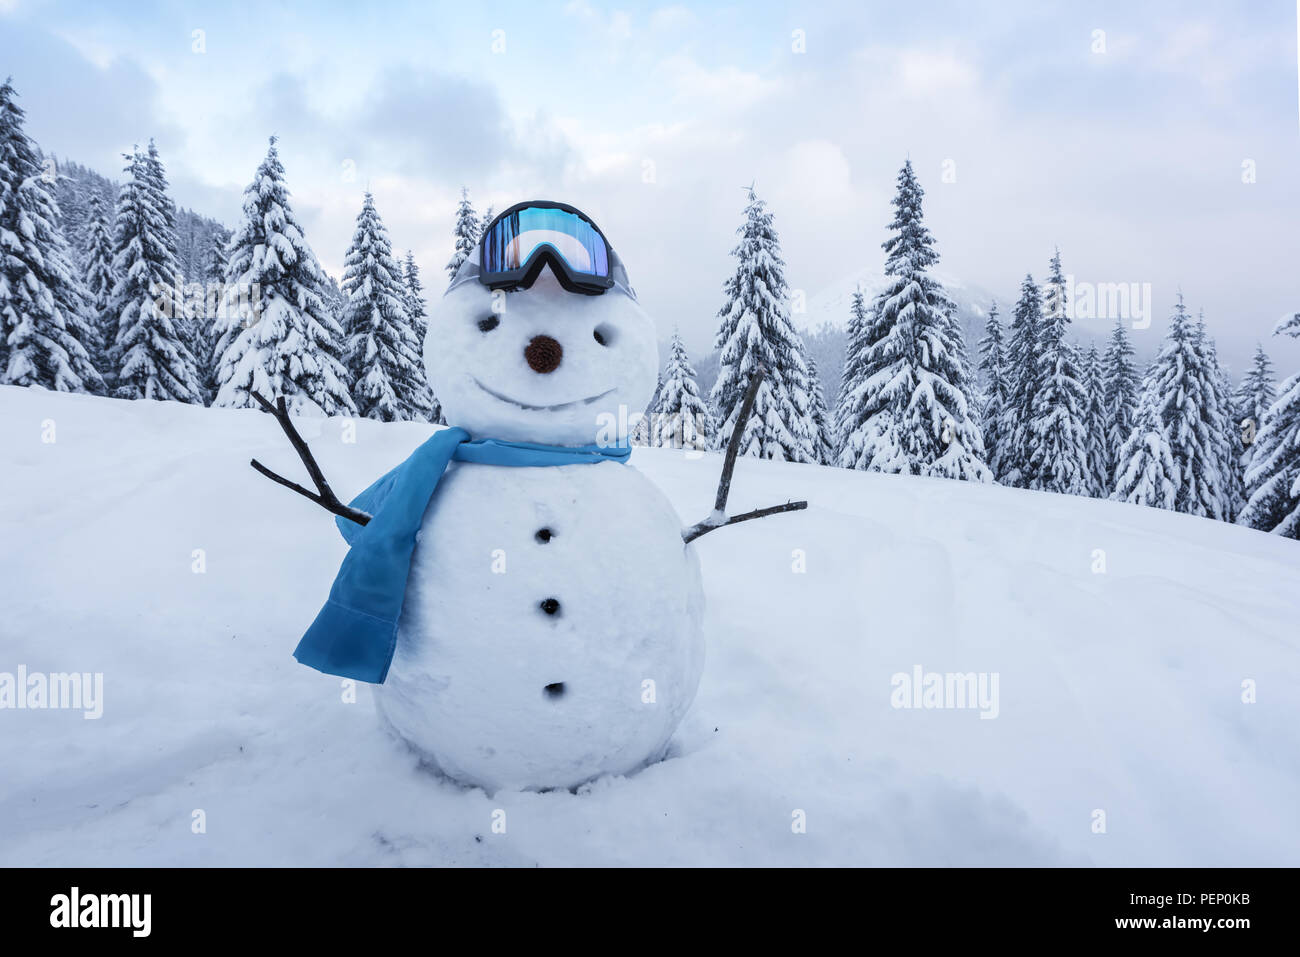 Funny snowman in ski glass Stock Photo